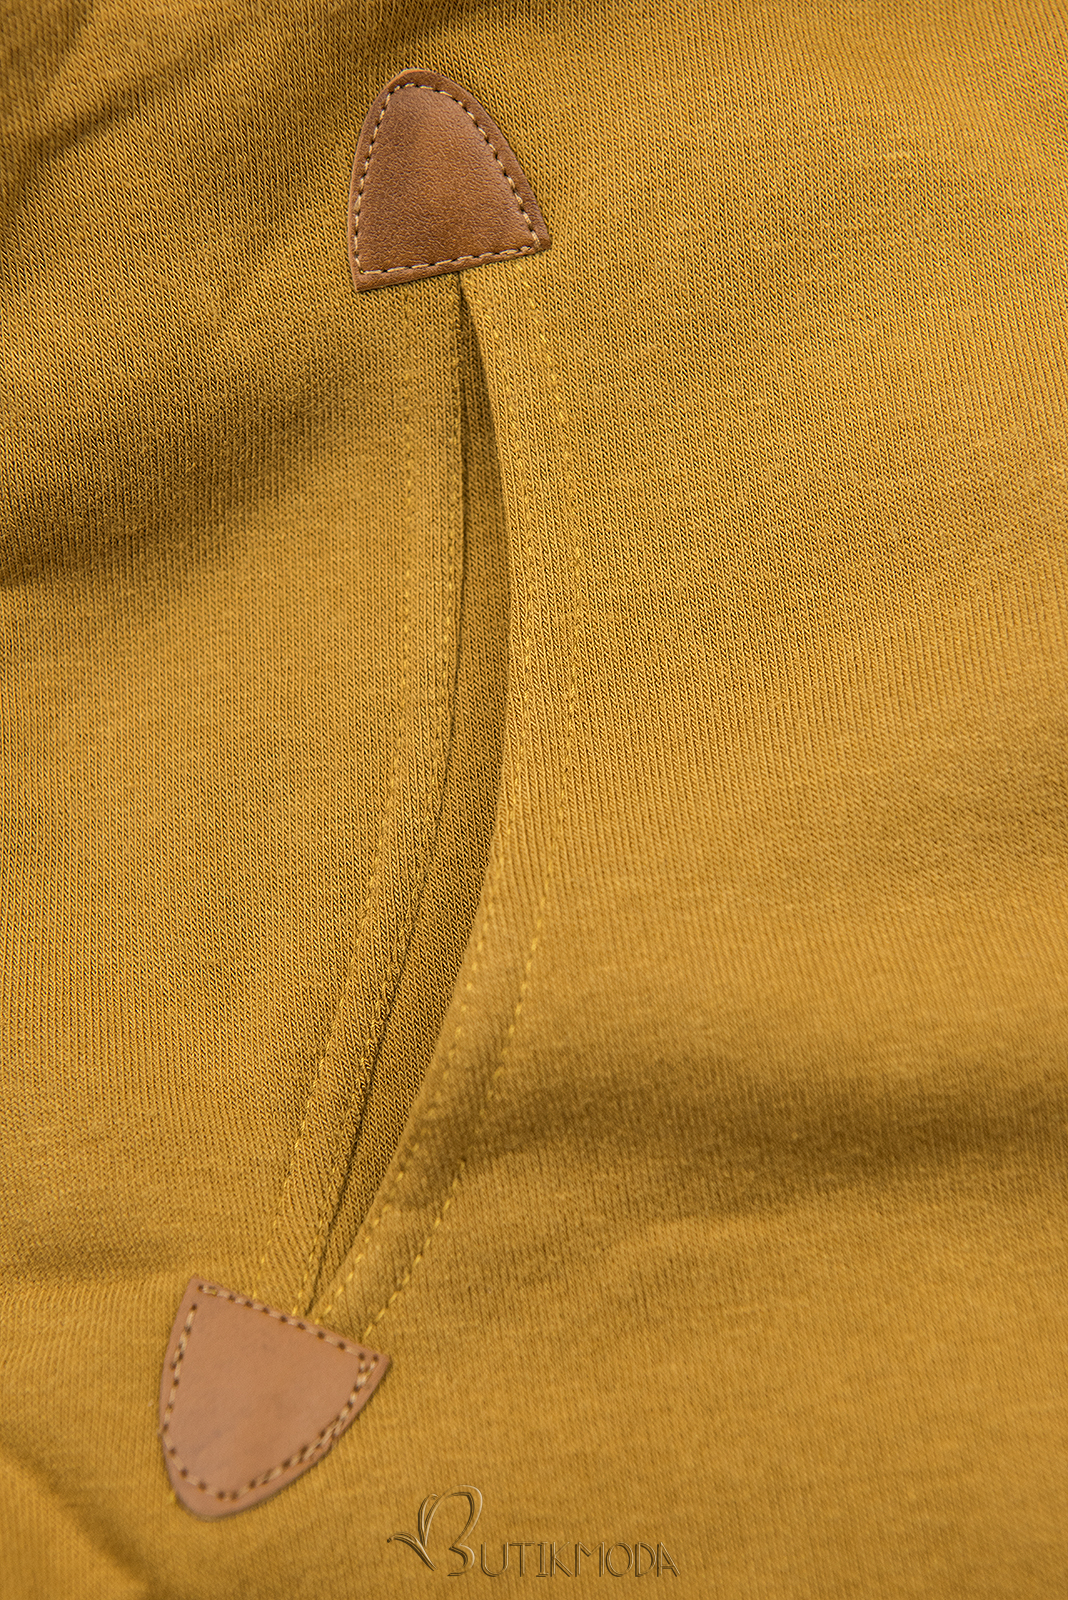 Sweatshirt dress mustard yellow